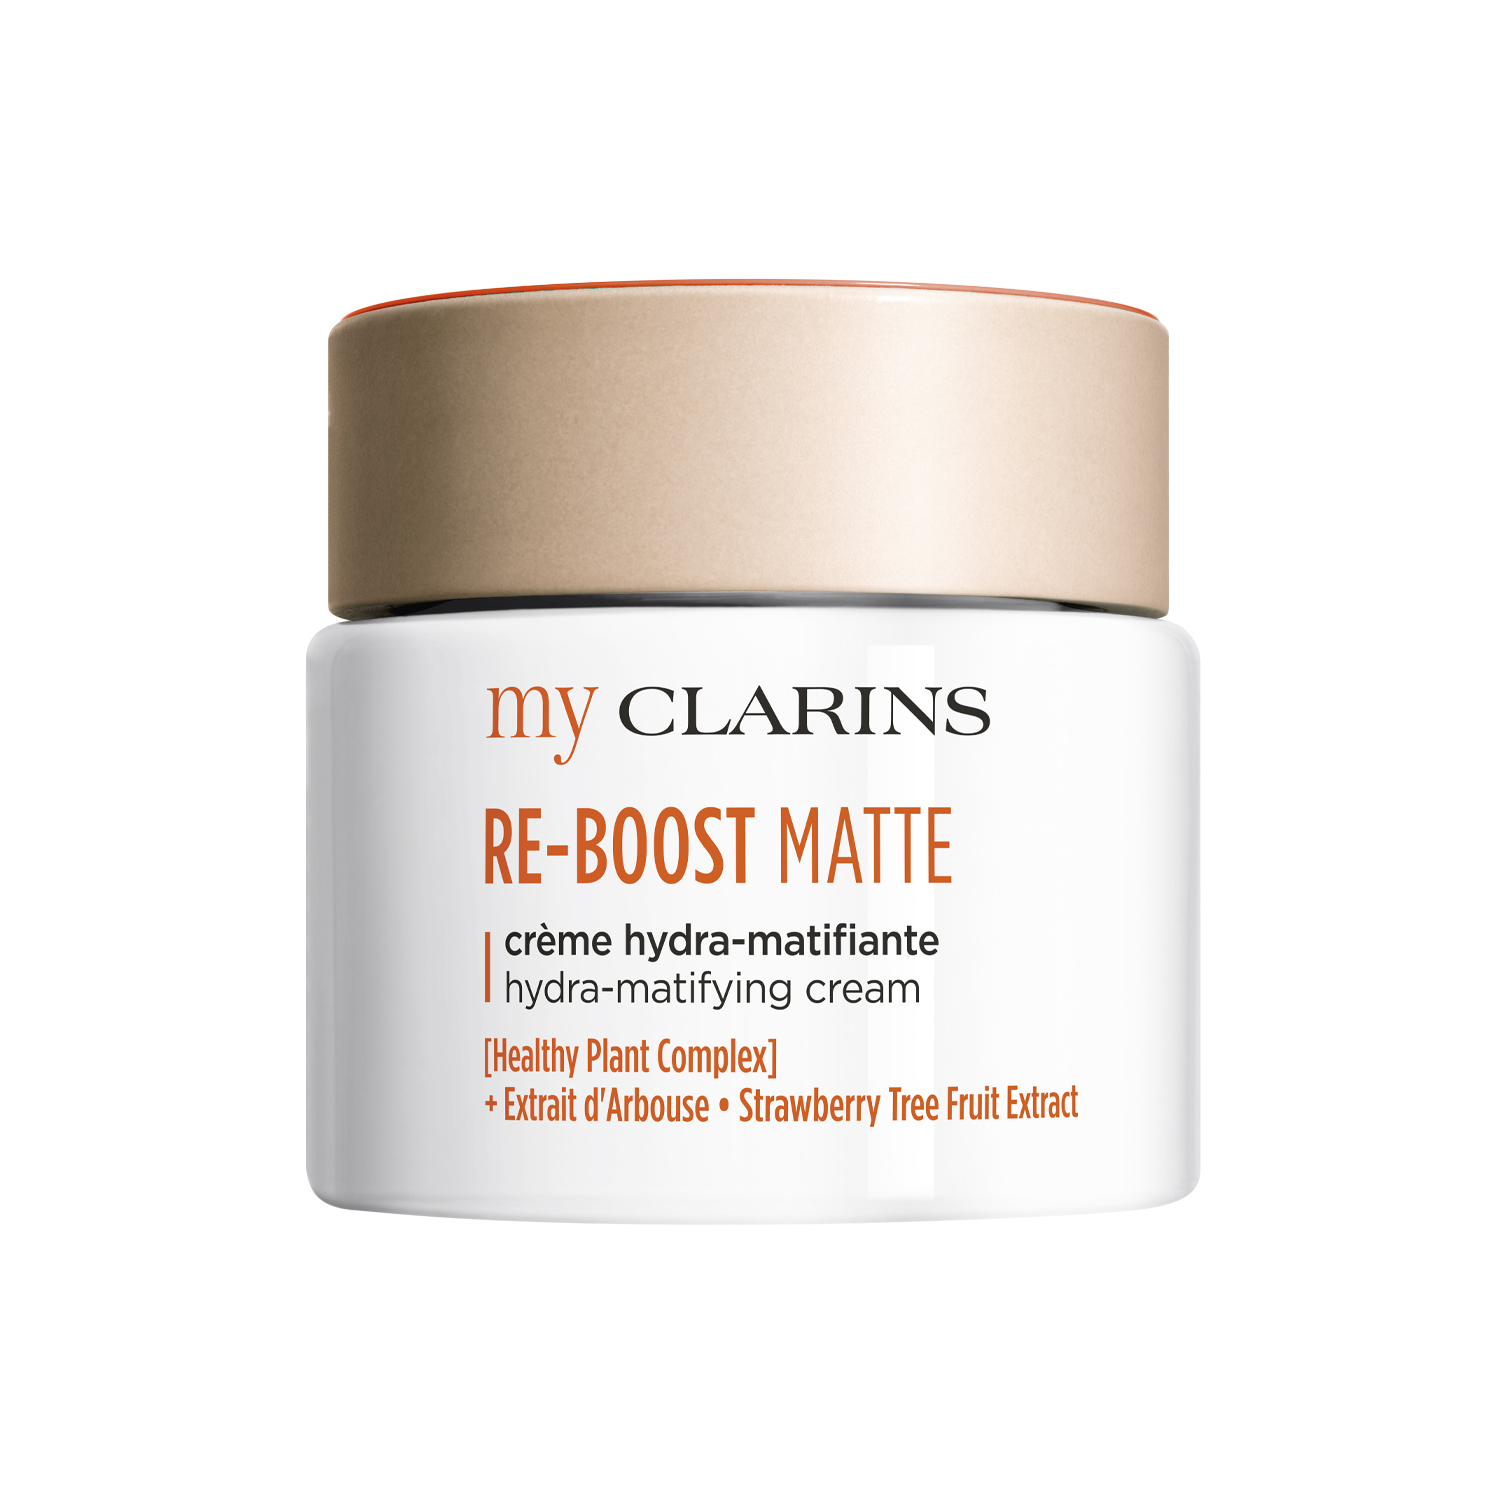 Clarins My Clarins RE-BOOST MATTE hydra-matifying cream 50ml